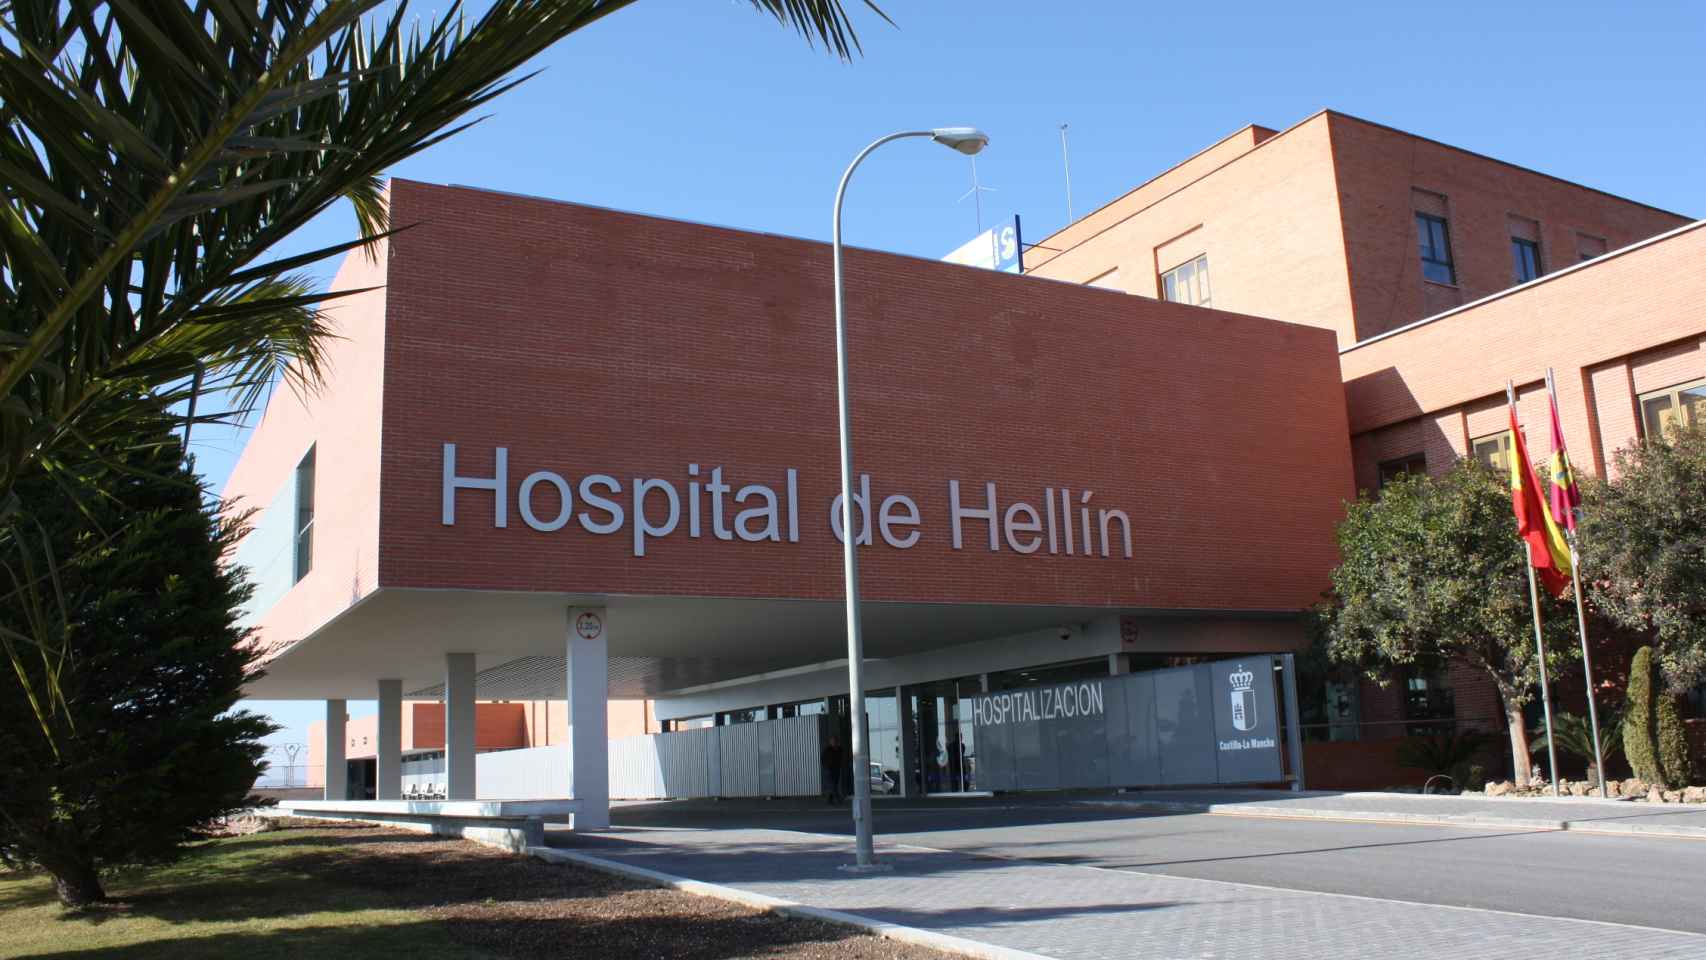 El herido ha sido trasladado al hospital de Hellín